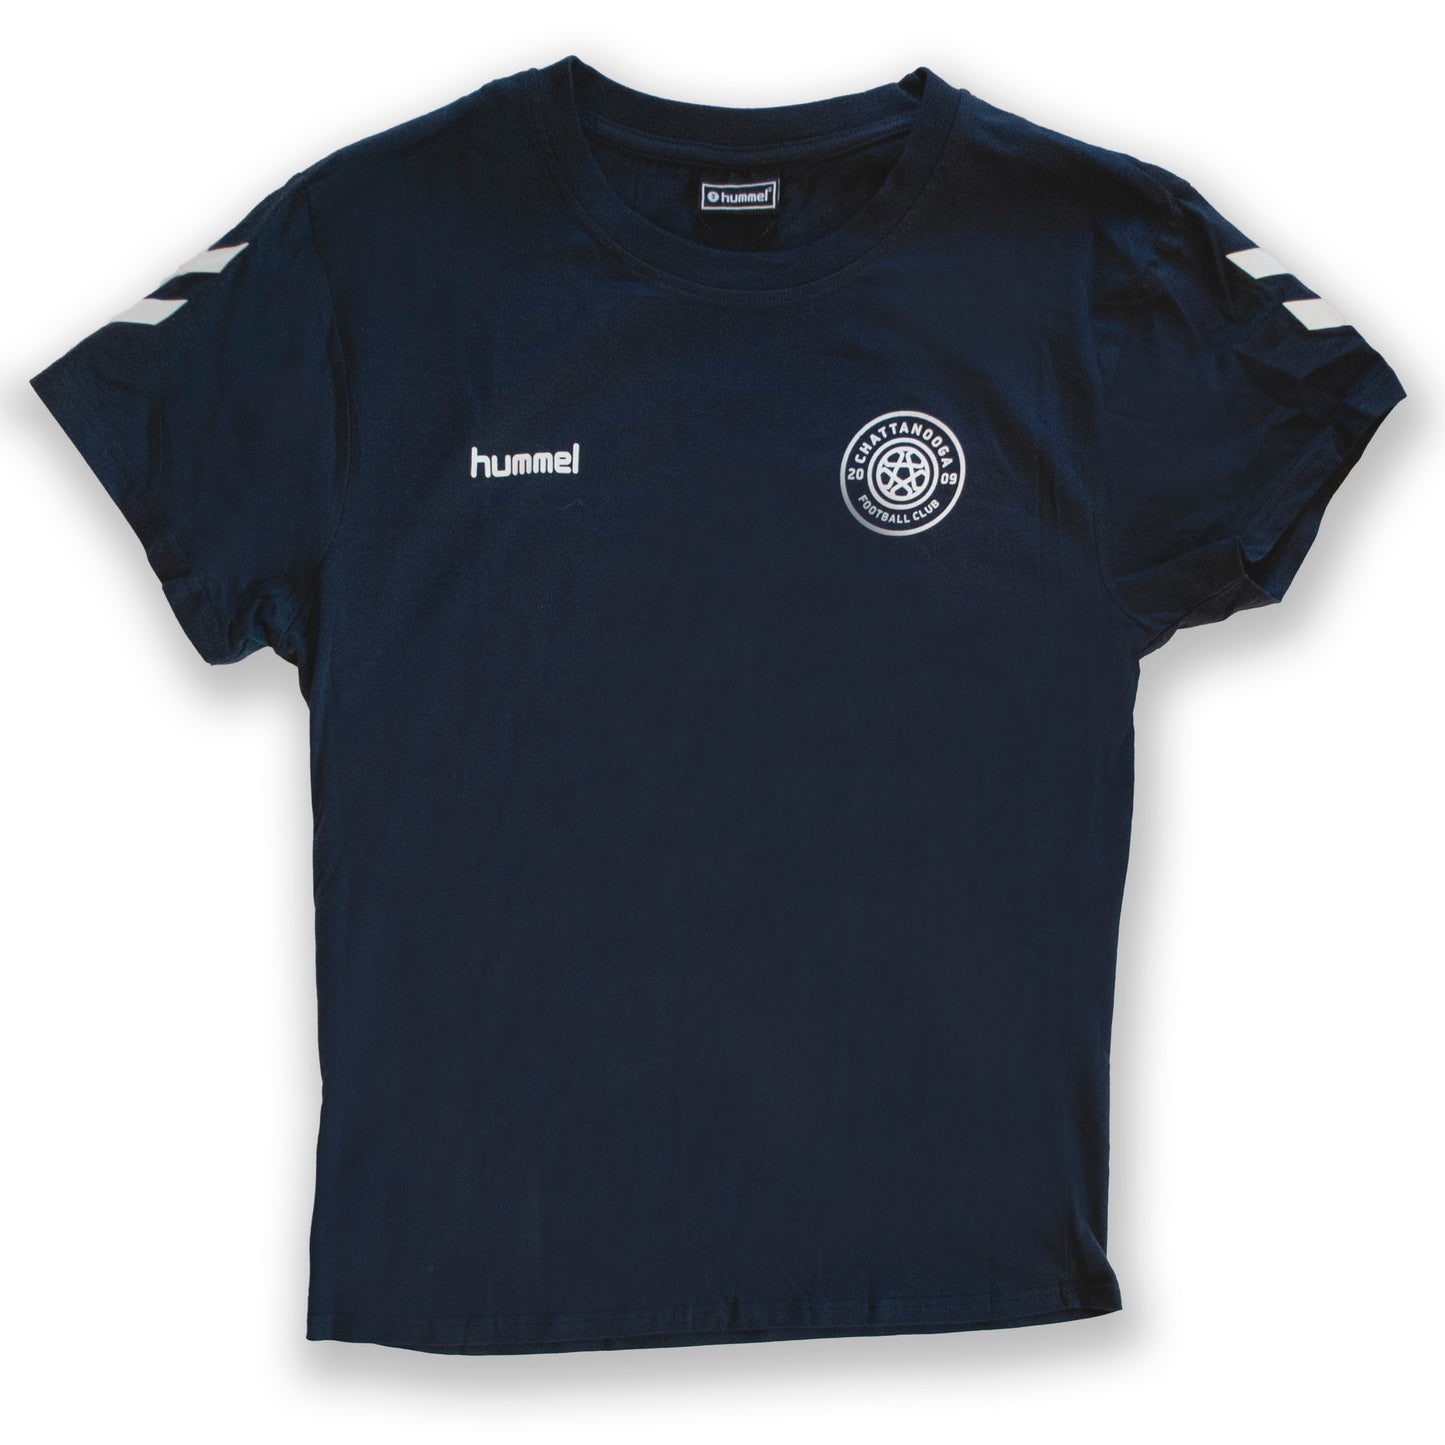 hummel Women's Cotton T-Shirt (Navy)